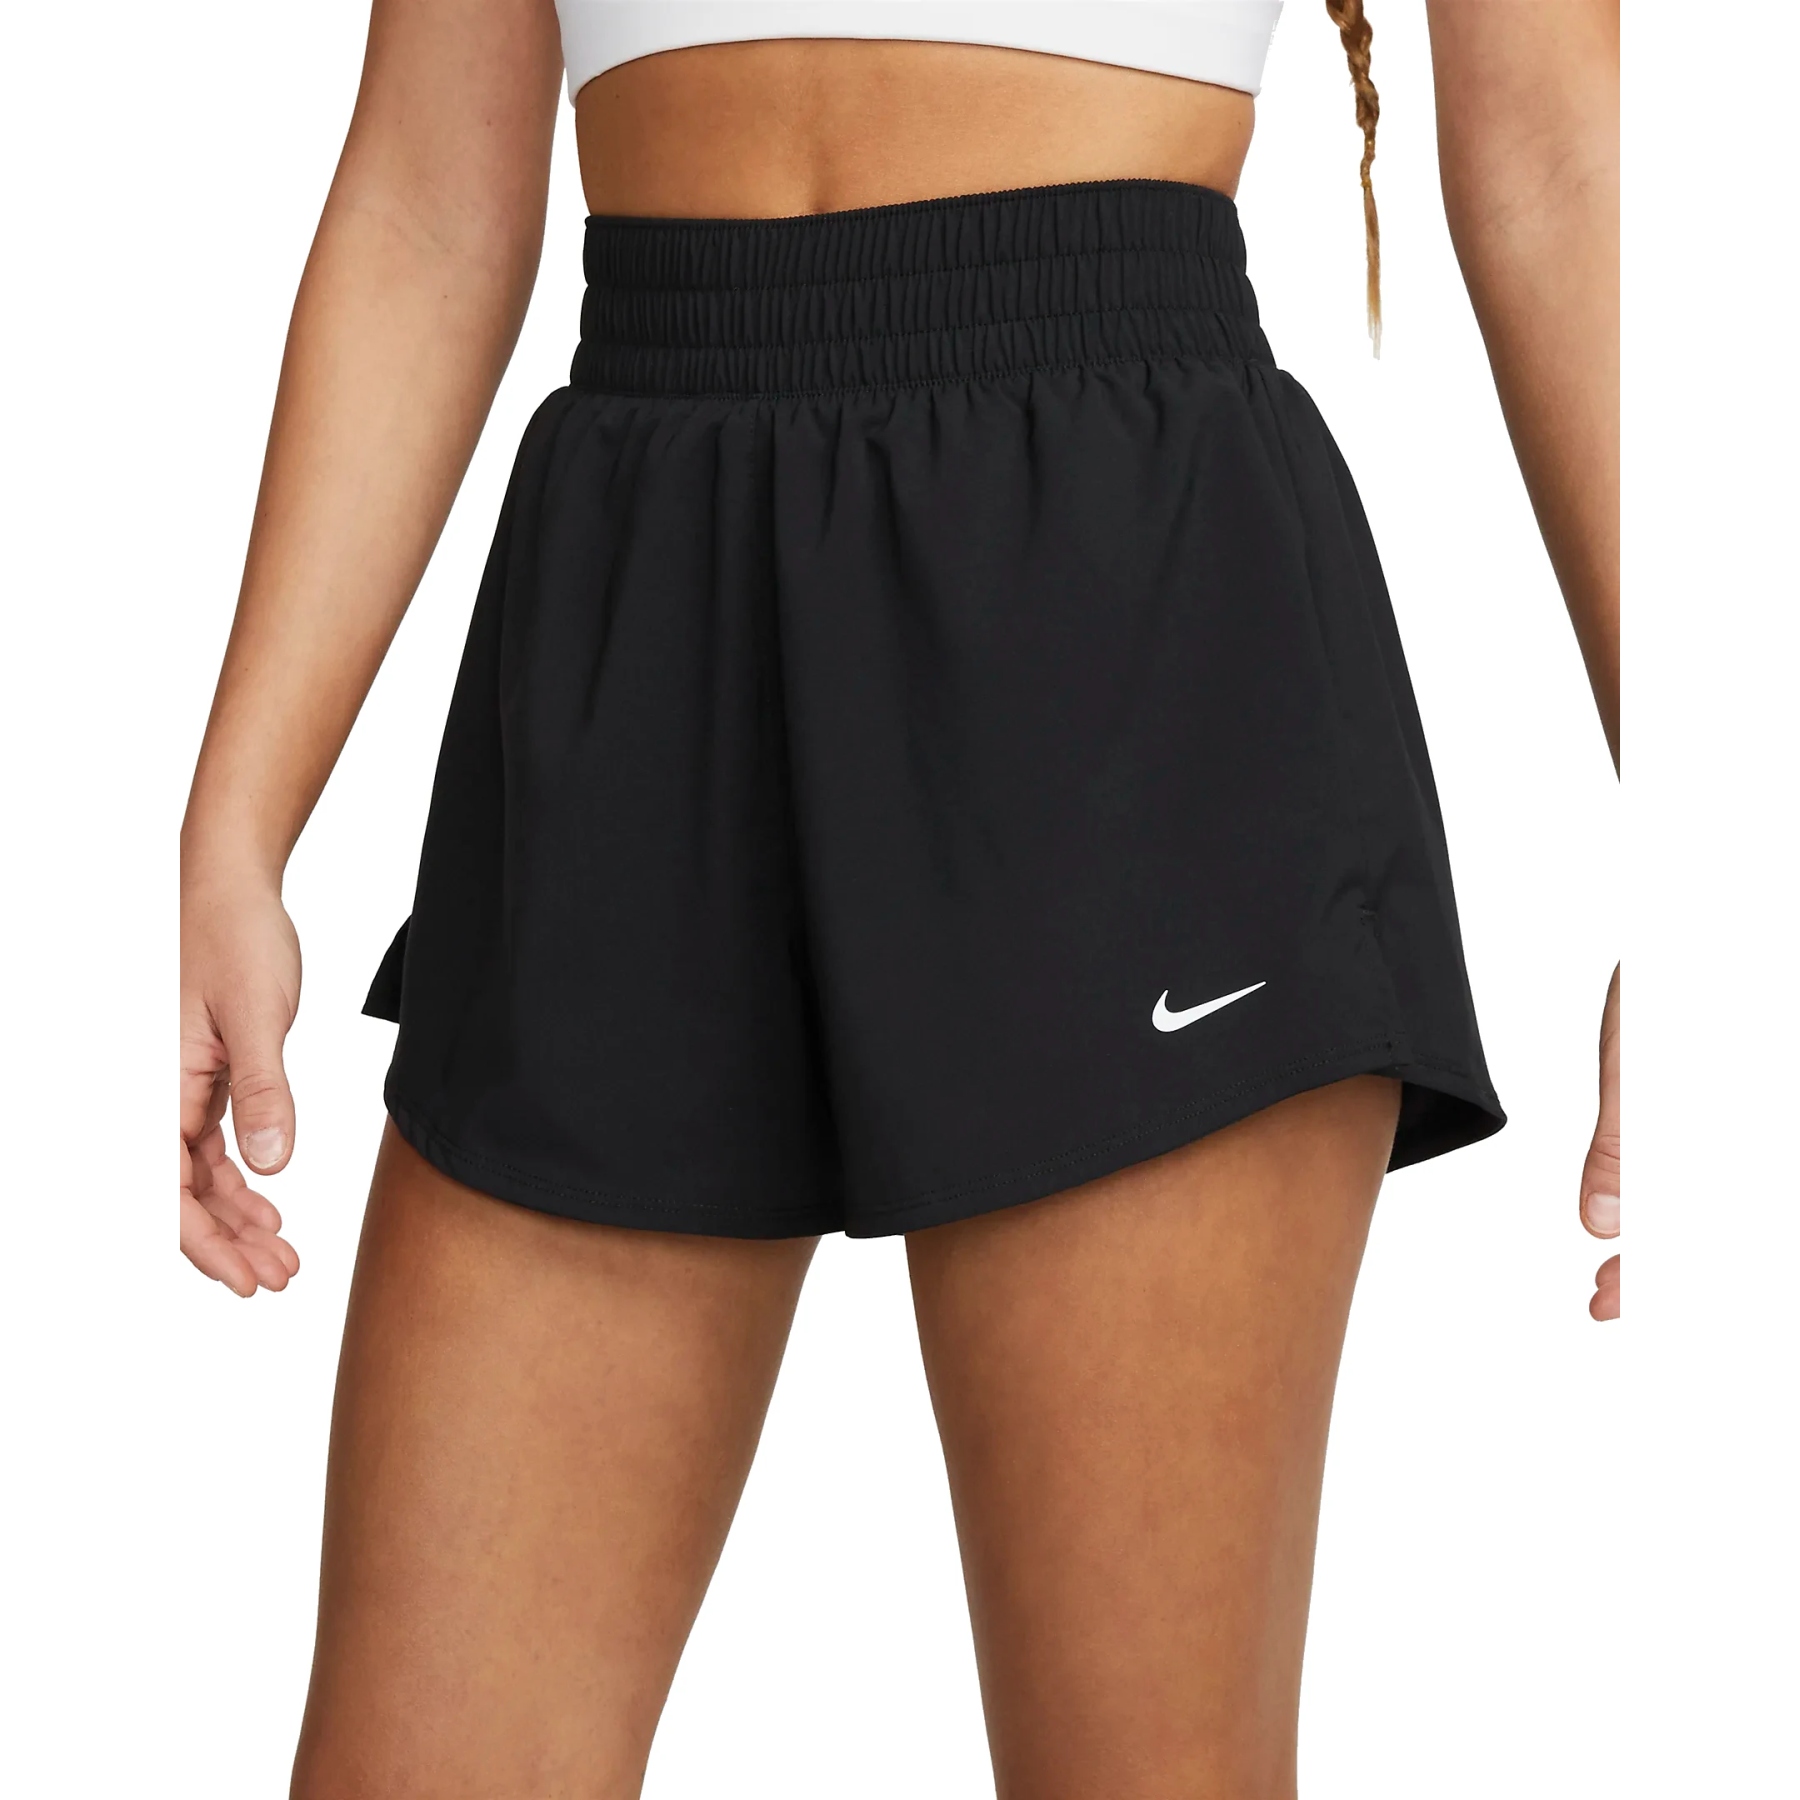 Bild von Nike One Dri-FIT 2-in-1-Shorts für Damen - black/reflective silver DX6016-010